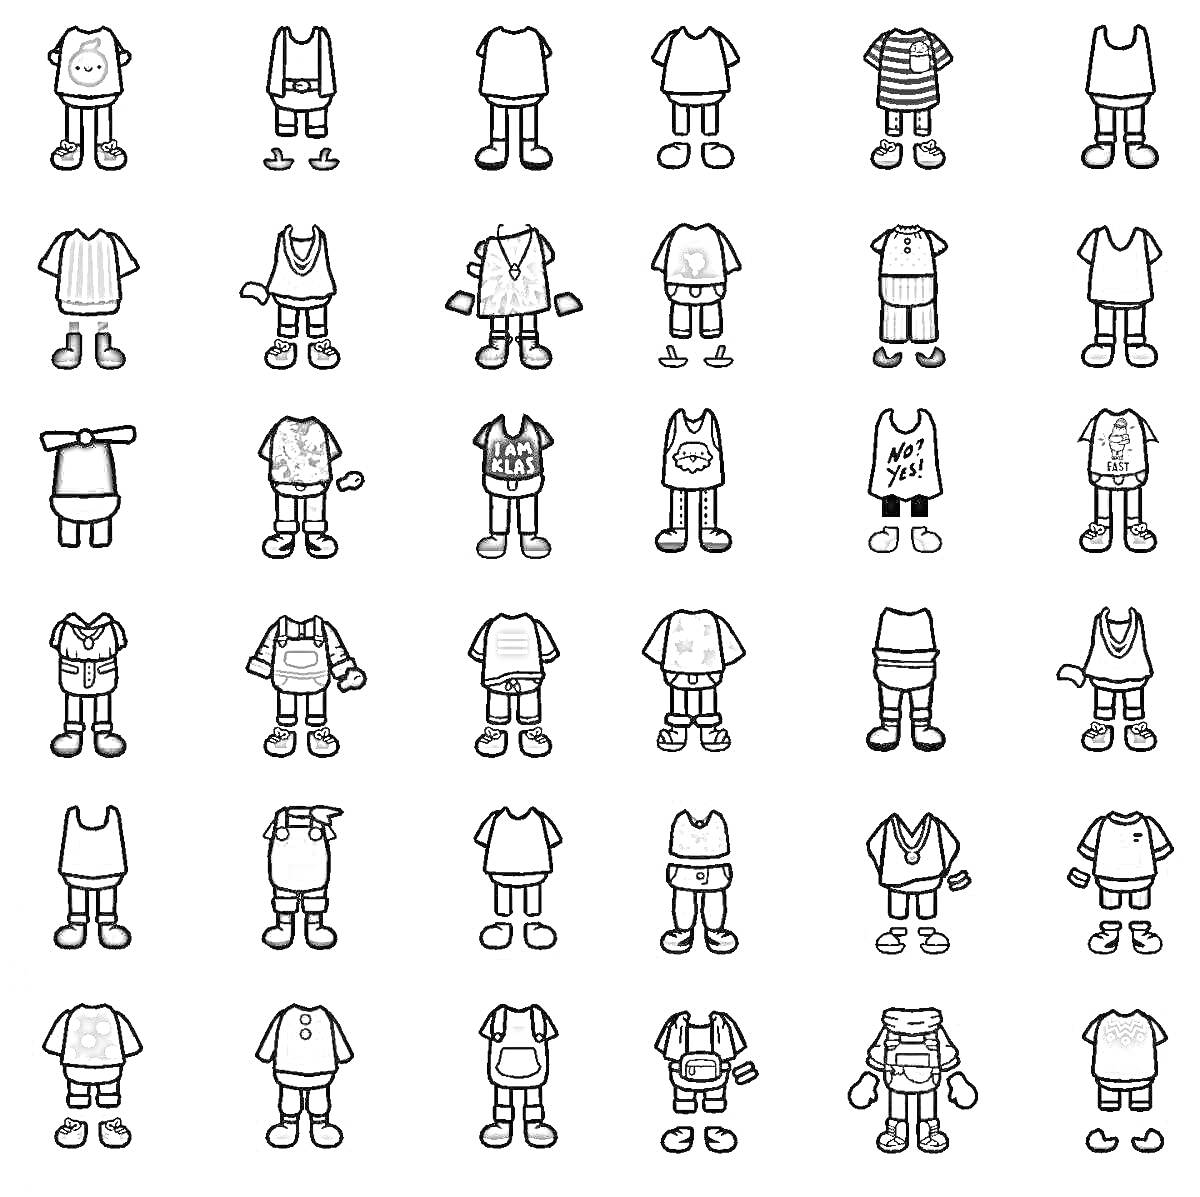 Раскраска Тока Бока персонажи без одежды, со множеством различных комплектов одежды и обуви, представленных в 6 рядах по 6 комплектов каждый